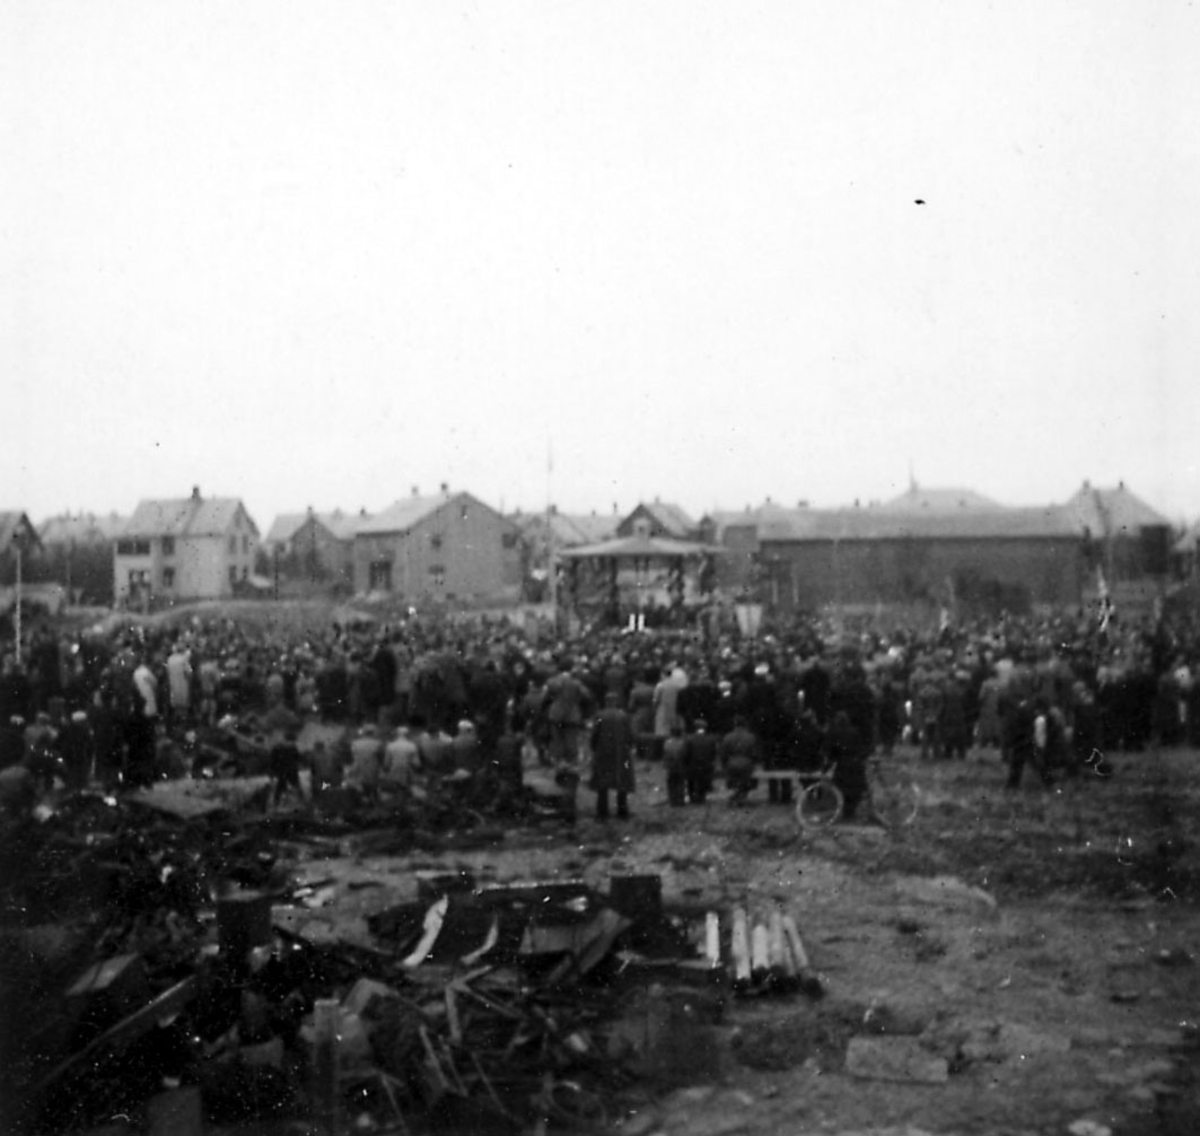 Frigjøringsdagene i Bodø etter krigen 1940 - 1945. Åpen plass med paviljong. Mange personer samlet. Rester etter ødeleggelser i forgrunnen.